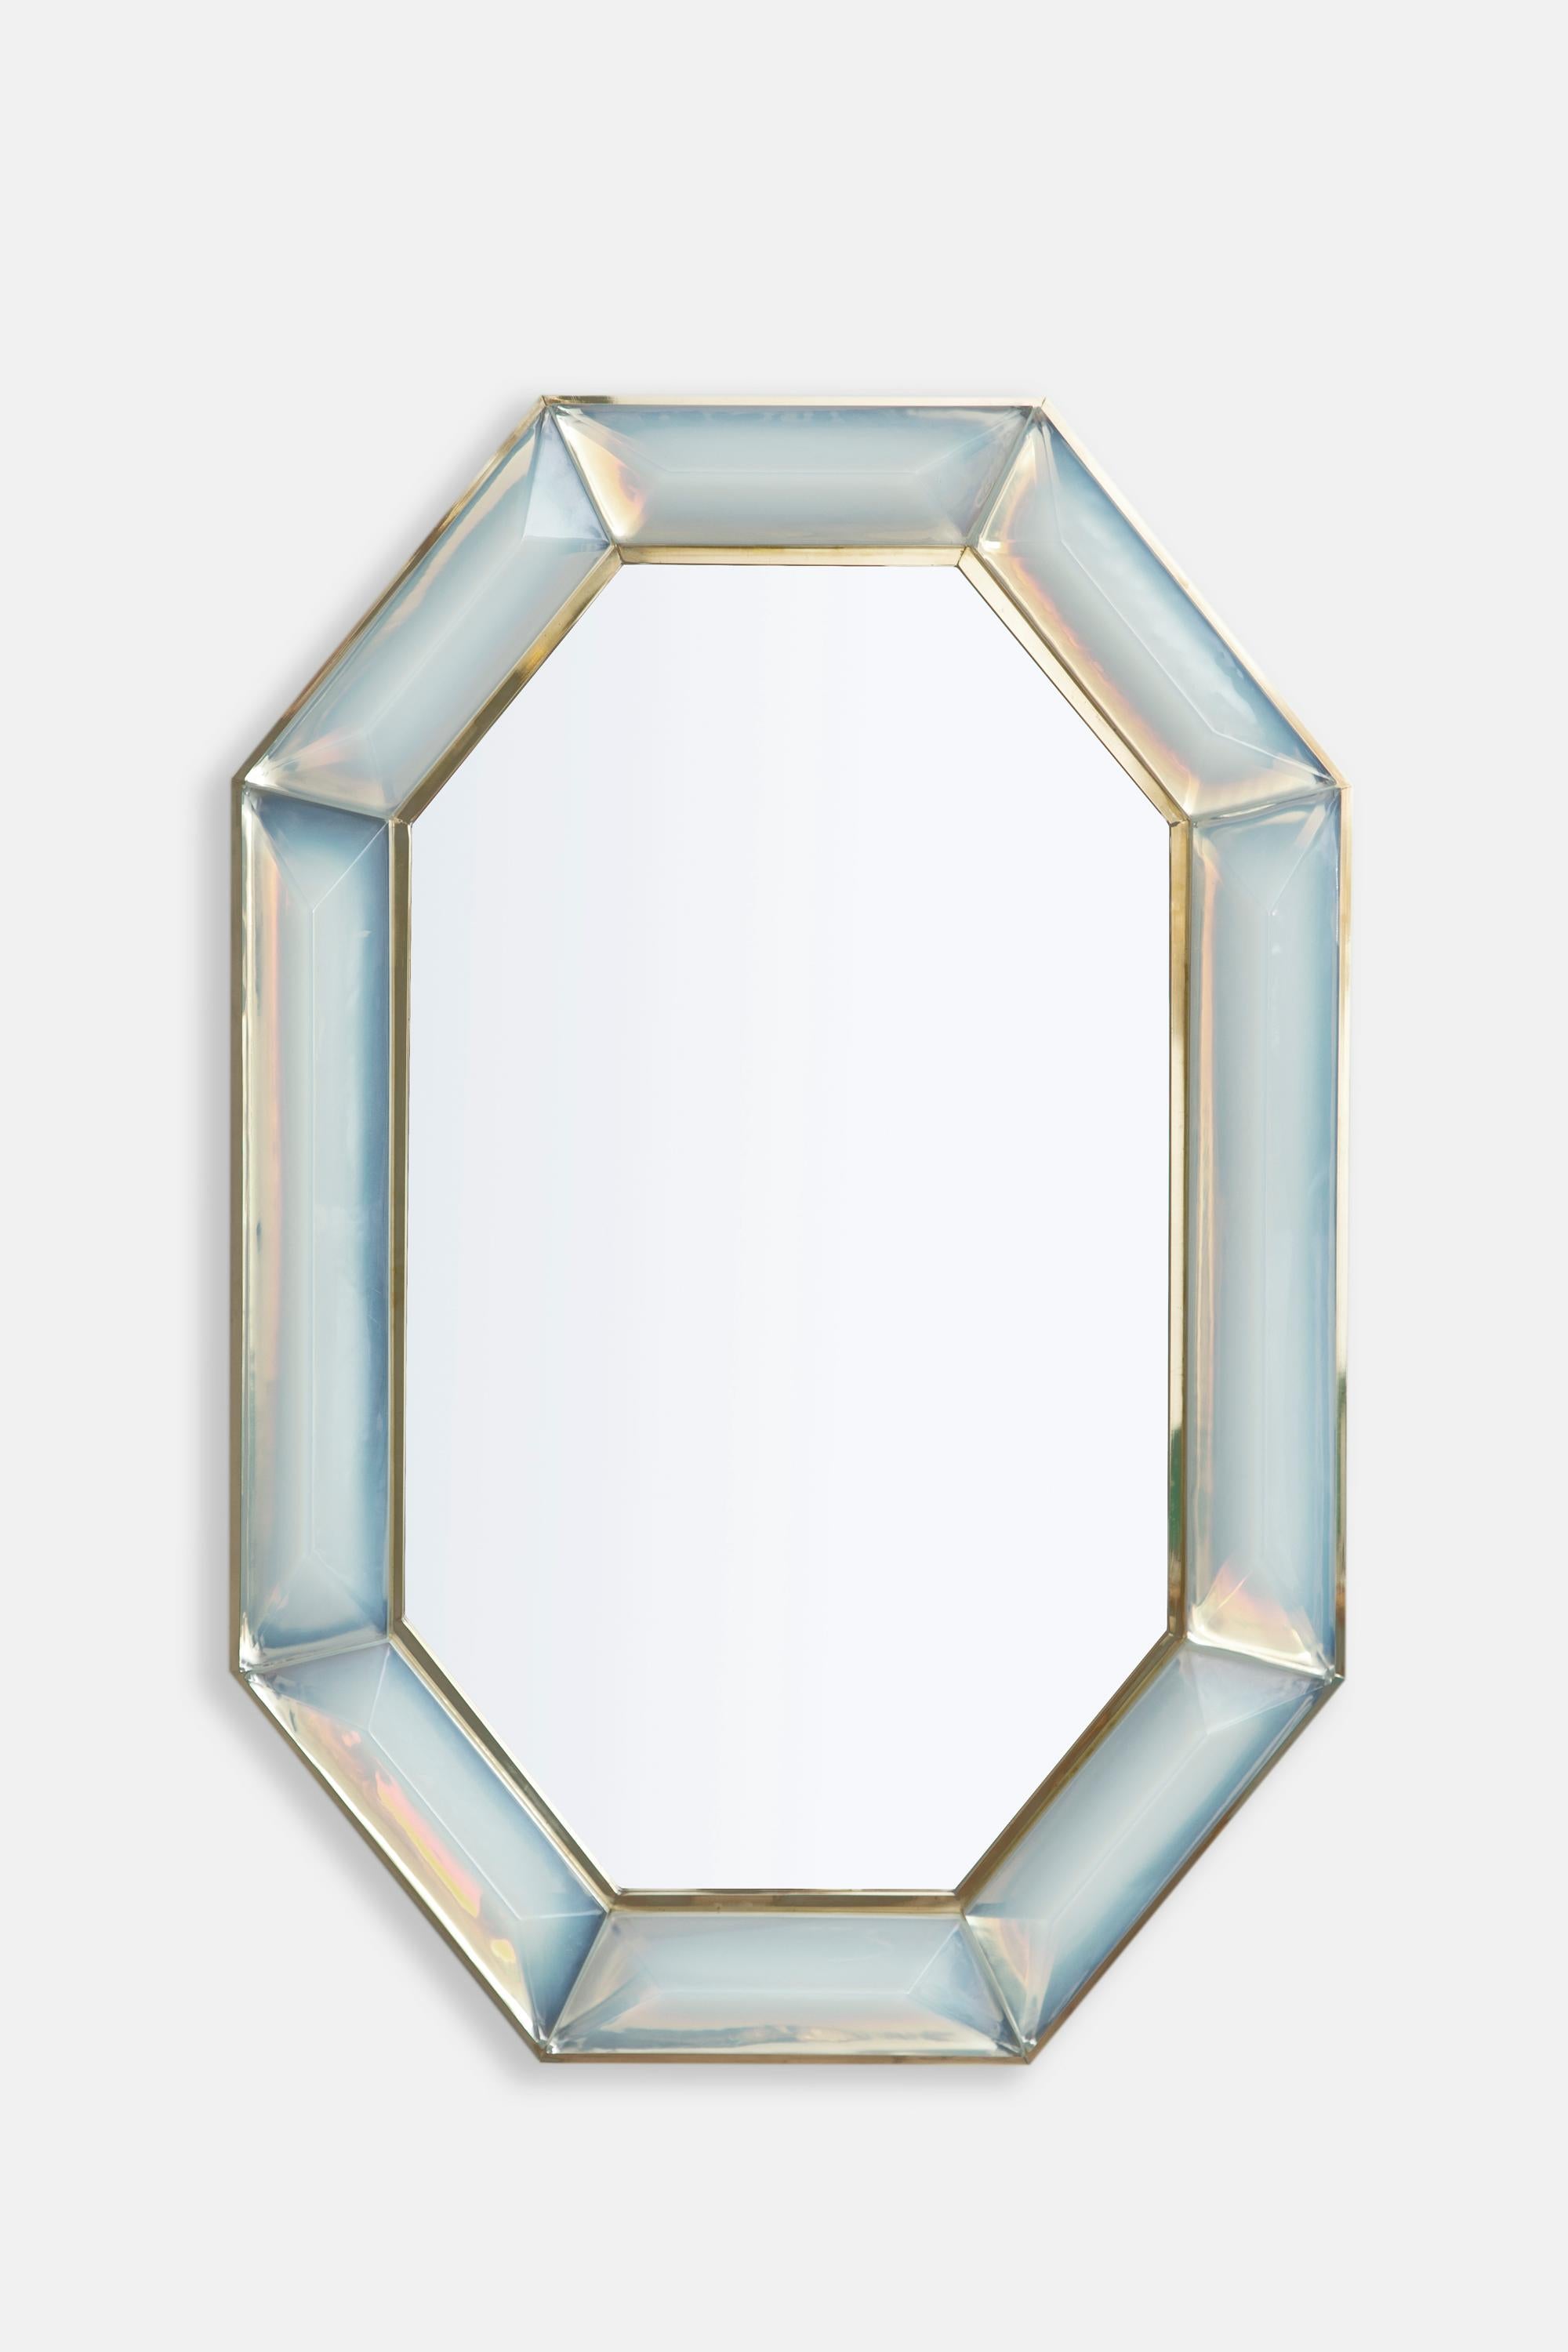 Paar maßgefertigte achteckige Spiegel aus irisierendem Murano-Glas, vorrätig.
Lebendig und intensiv schillernder Opalglasstein mit natürlich vorkommenden Lufteinschlüssen.
Hochglanzpoliertes Facettenmuster.
Messing-Galerie rundherum.
Jeder Spiegel